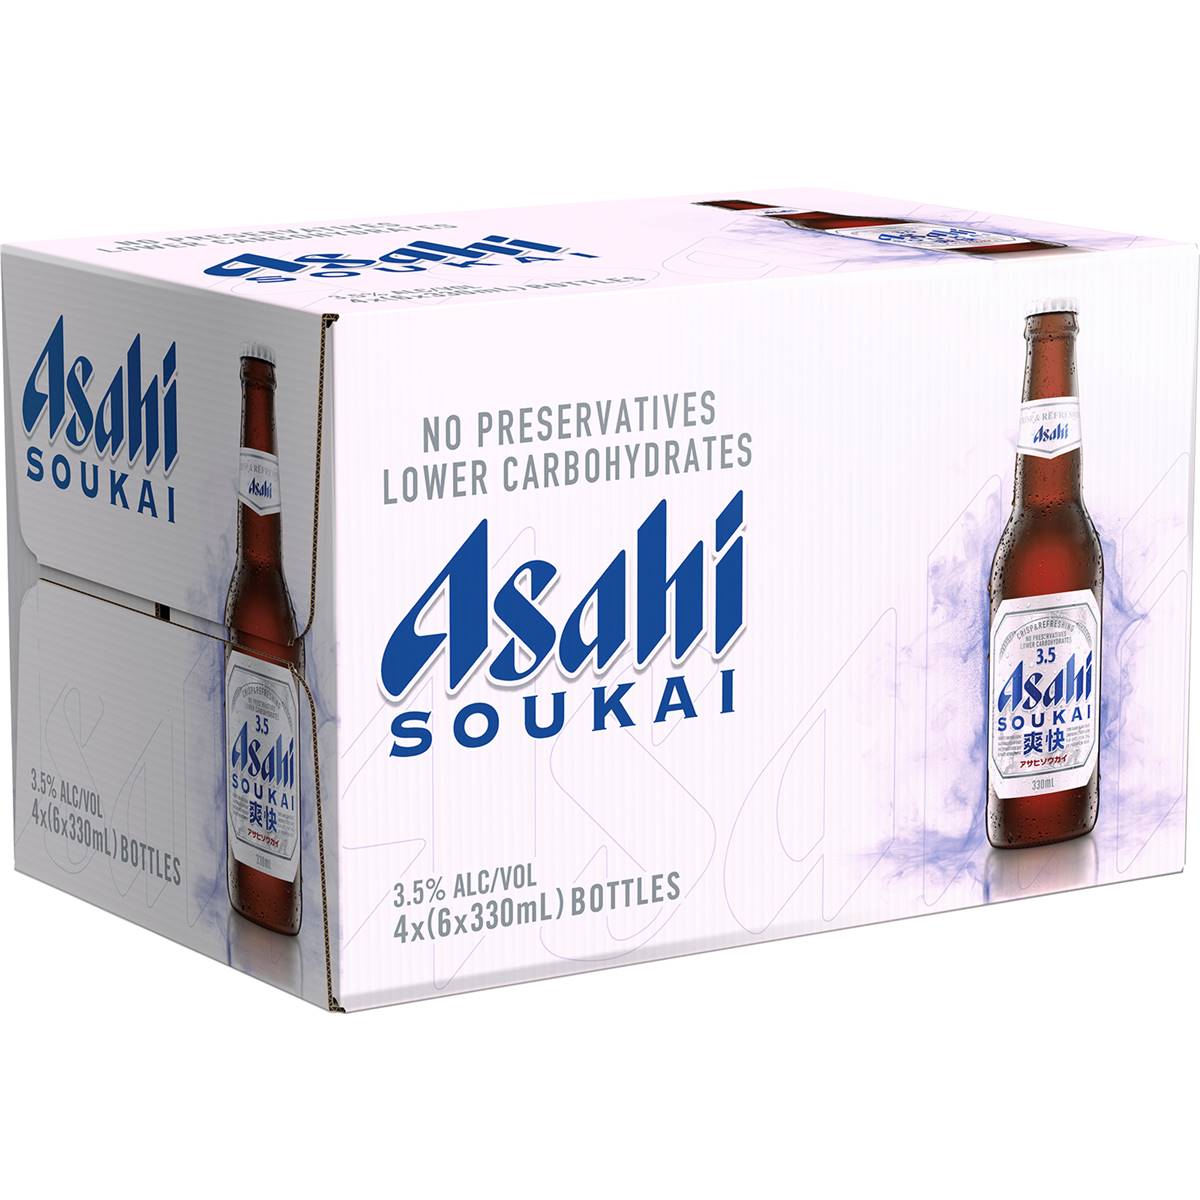 Calories in Asahi Soukai Premium Lager Low Carb Bottles